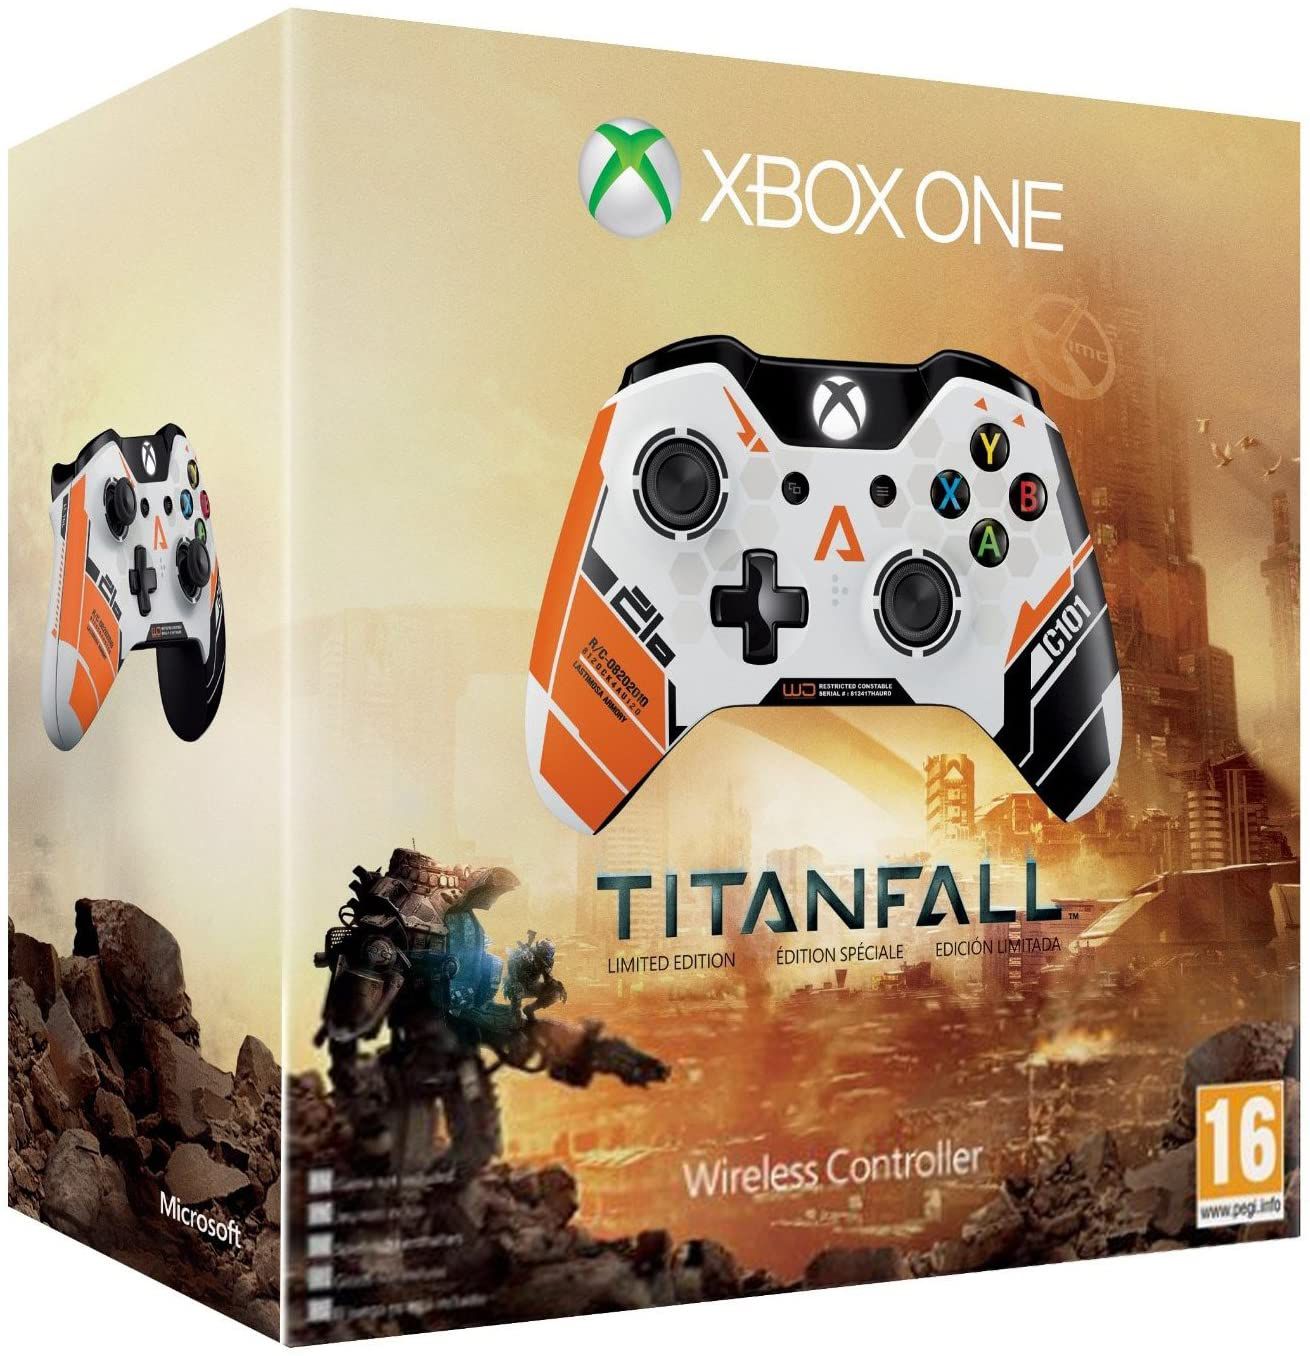 Jogo Titanfall 2 original para Microsoft Xbox One no estado